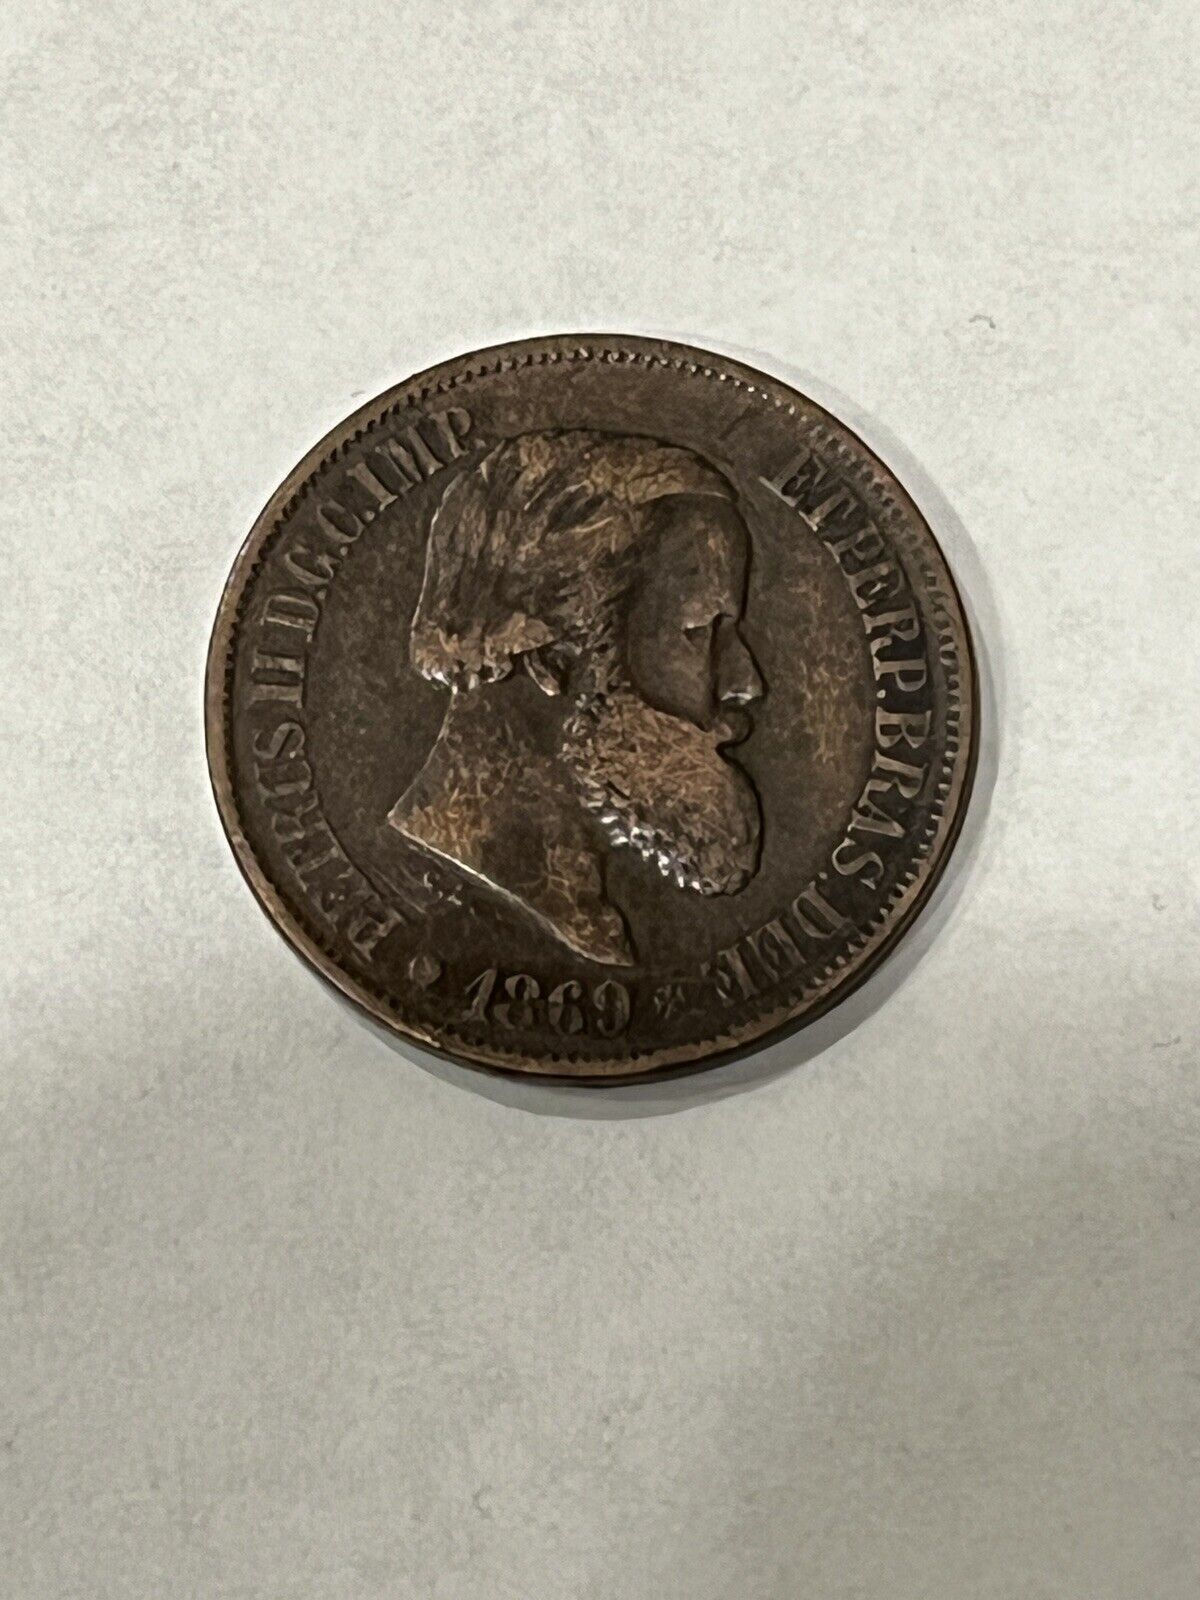 1869 BRAZIL 20 REIS COIN VF